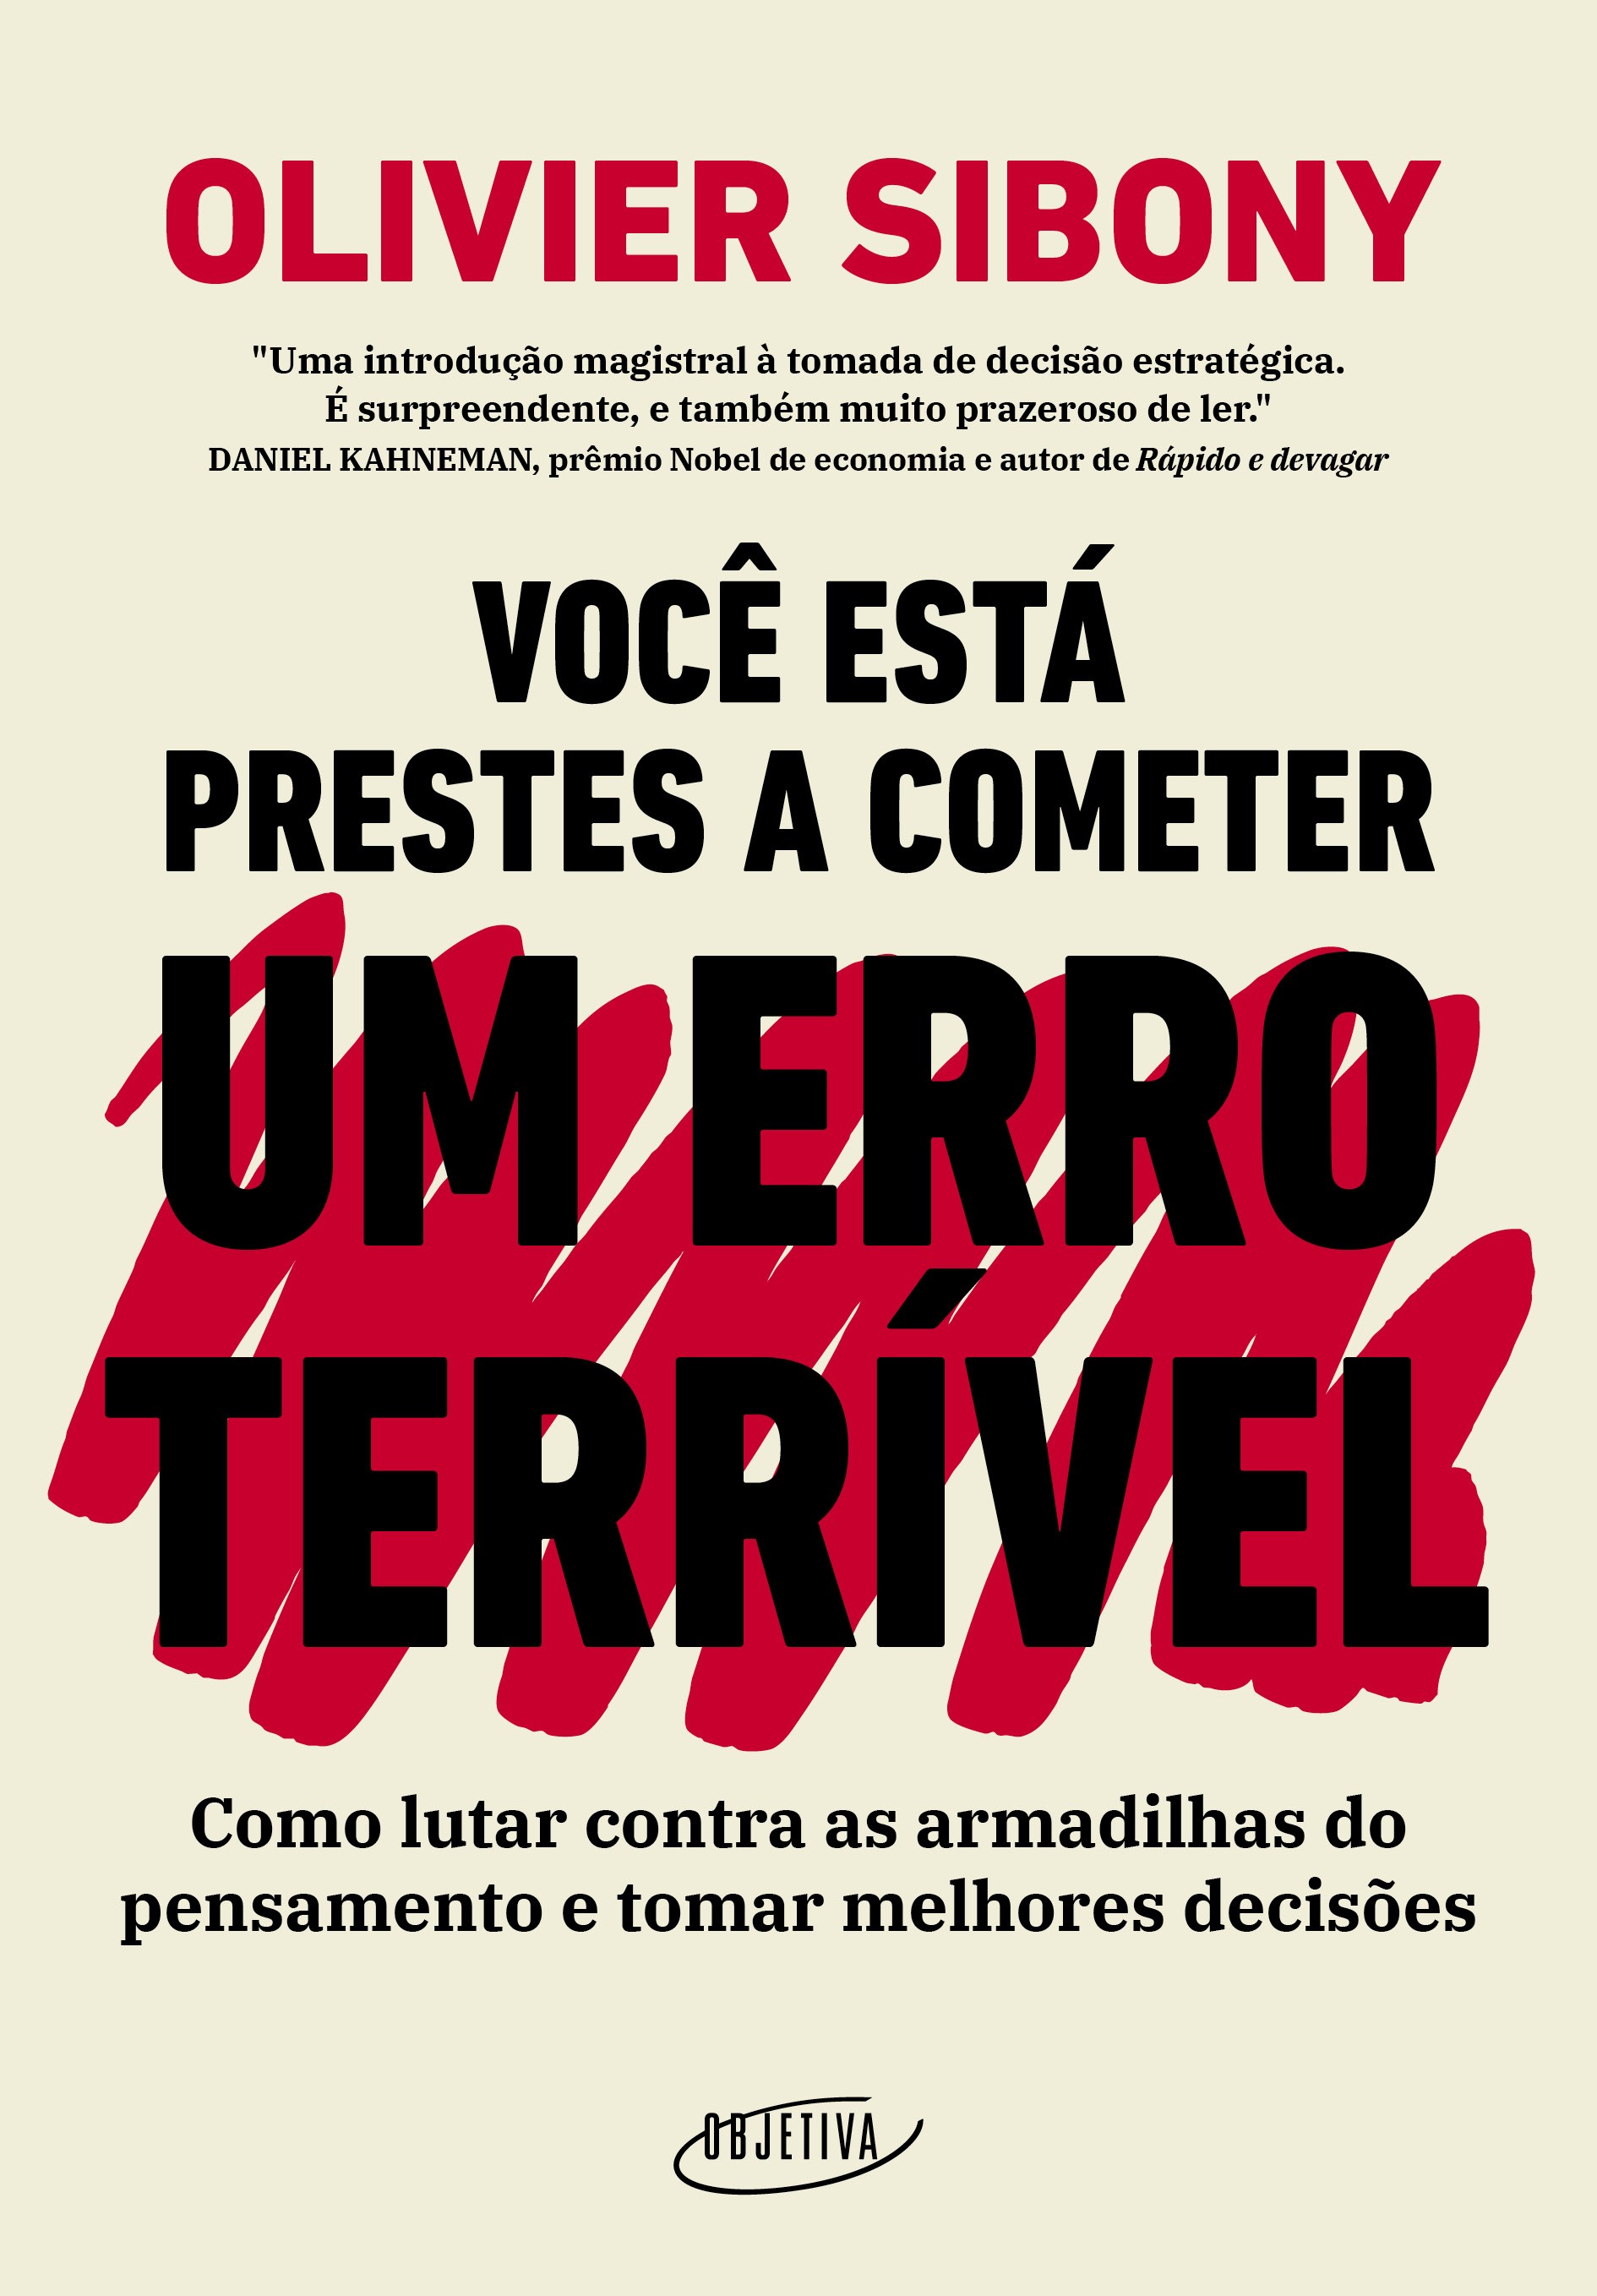 Capa do livro de Sibony, que será lançado no Brasil pela Companhia das Letras (Foto: Divulgação)